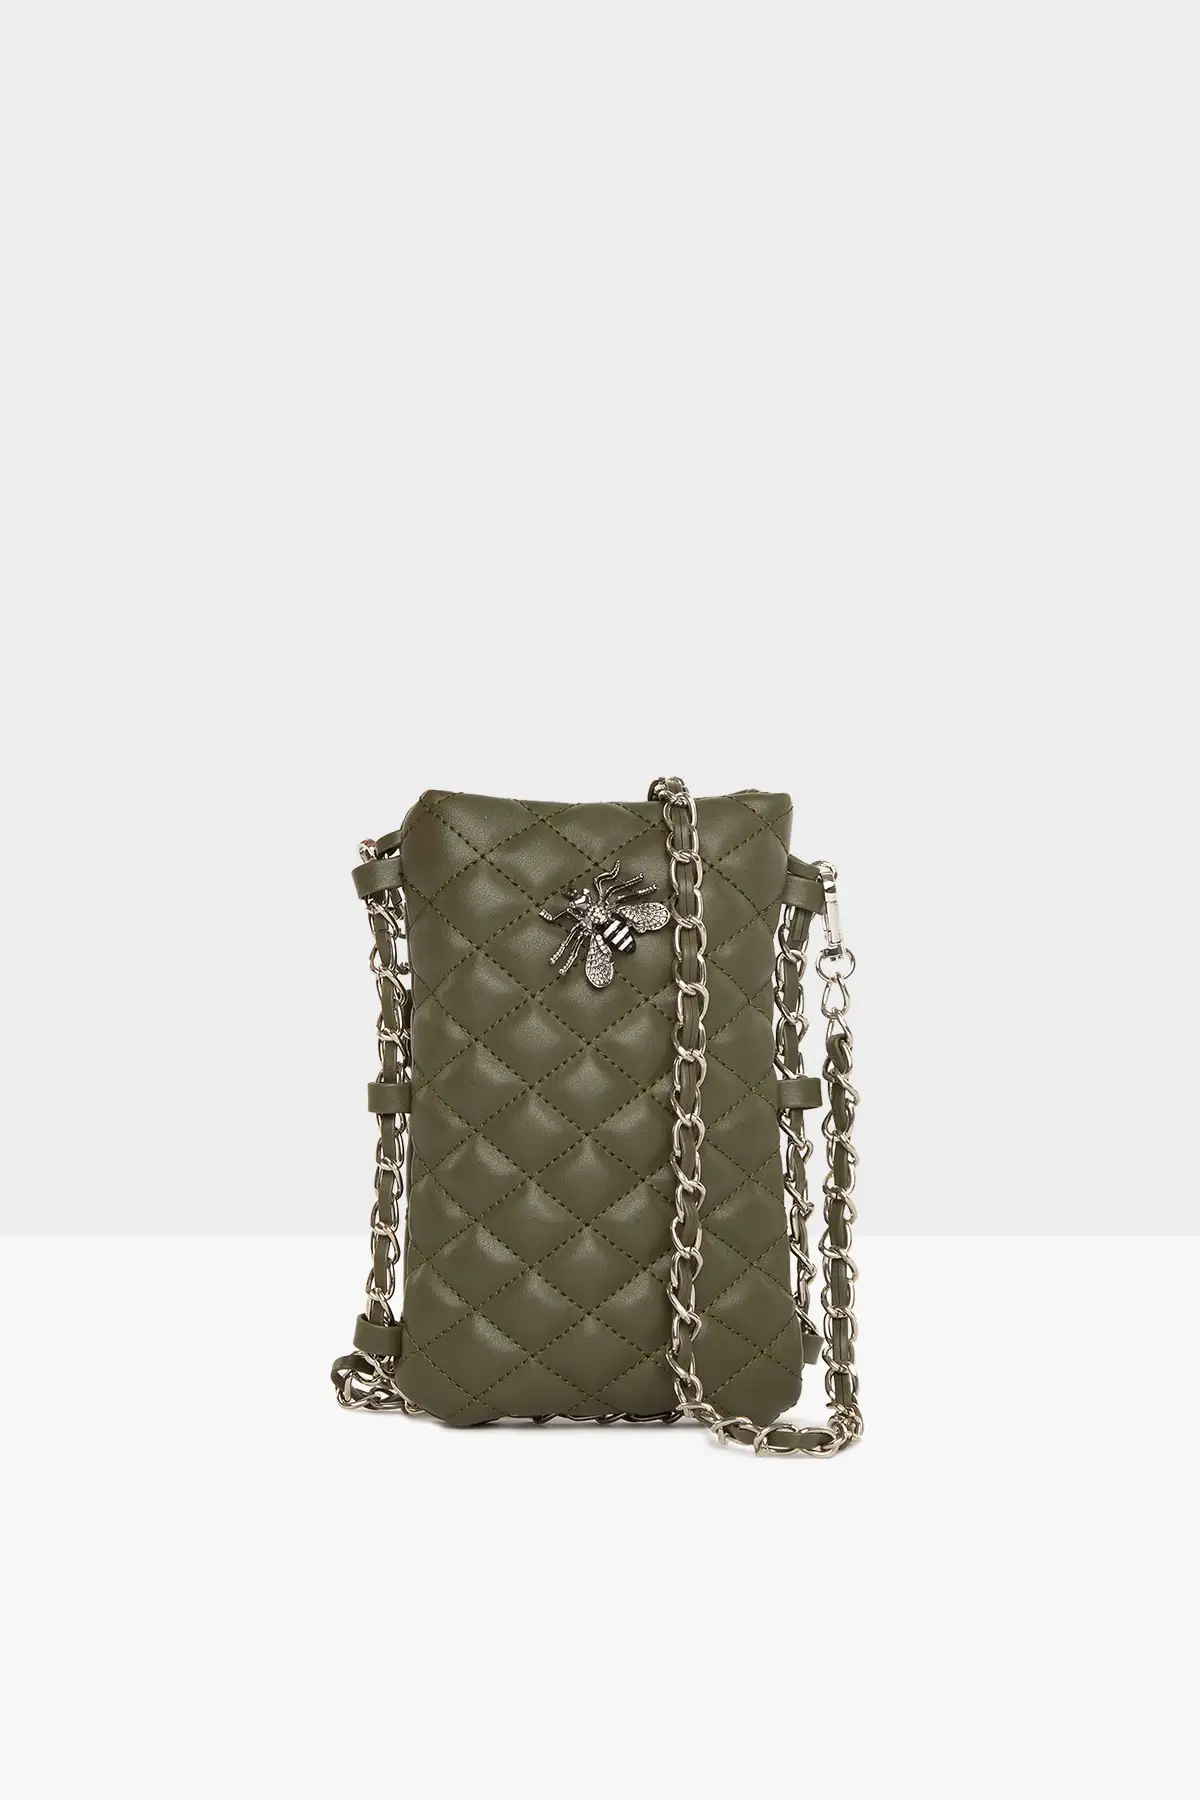 

Женская Стеганая мини-сумка цвета хаки, модная трендовая Водонепроницаемая Повседневная бархатная сумка на ремне через плечо из кожи, 2021